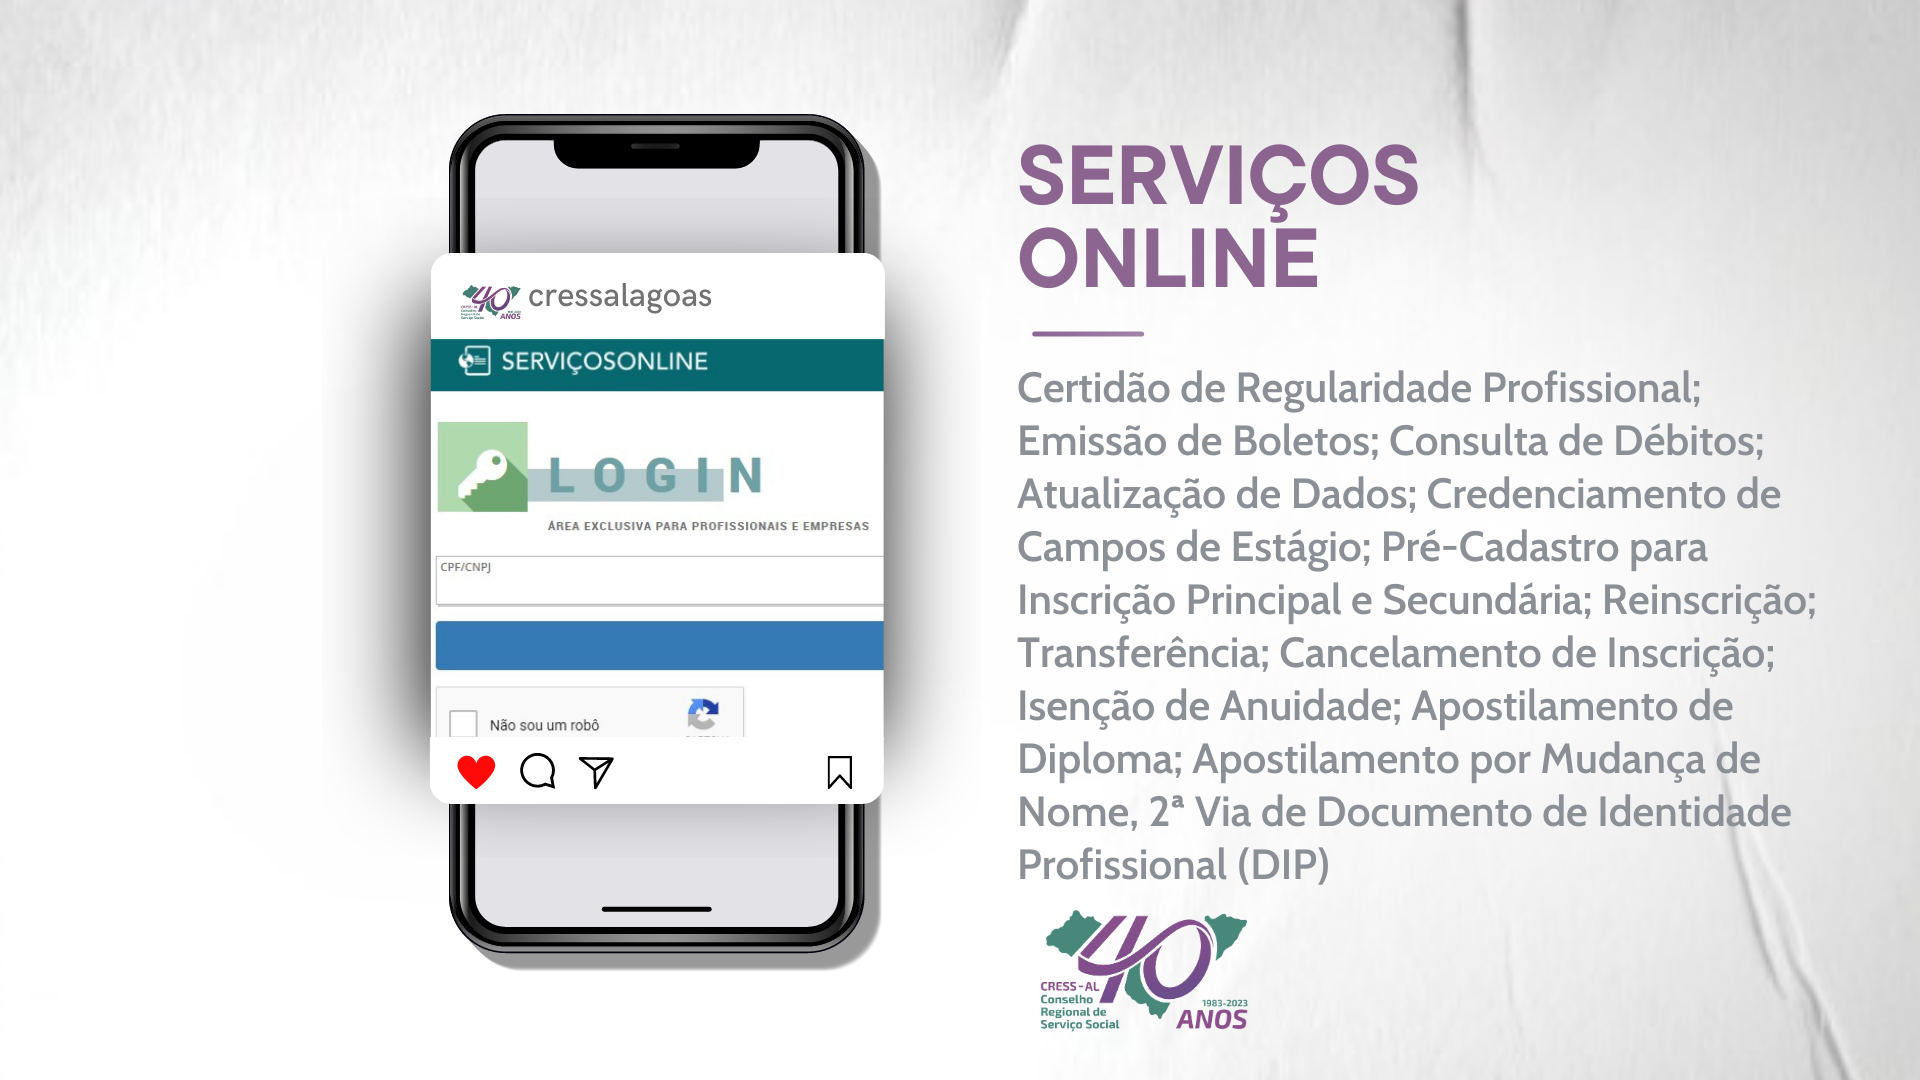 Plataforma dos Serviços Online: disponível para legalização do exercício profissional